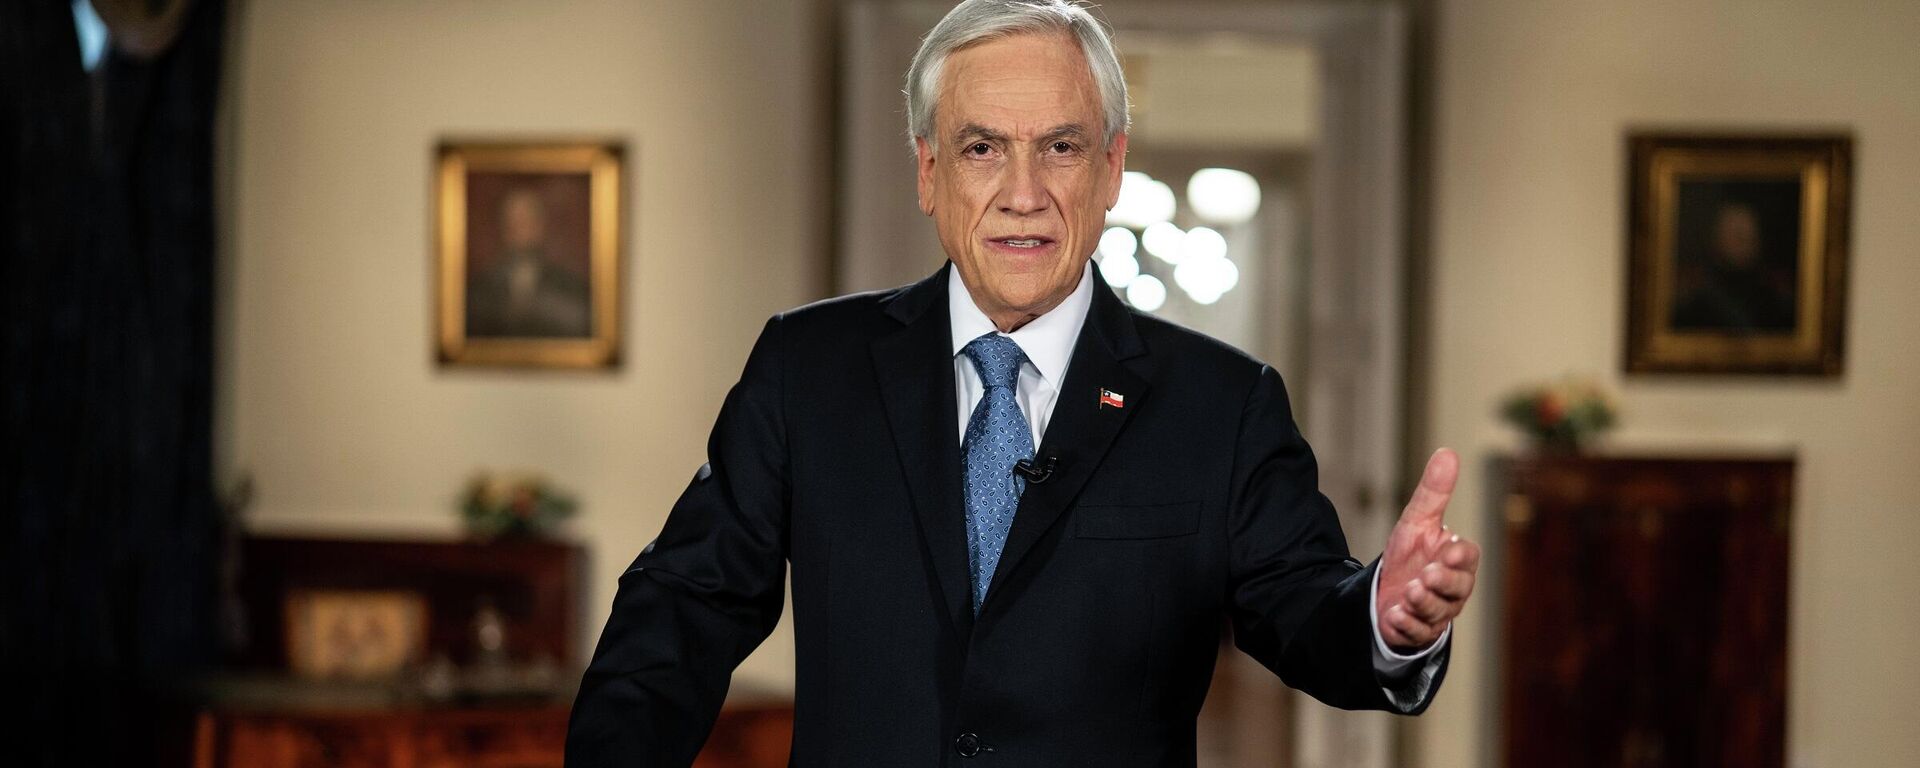 El presidente chileno, Sebastián Piñera, anuncia la mejora de sistema de pensiones en cadena nacional - Sputnik Mundo, 1920, 27.04.2021